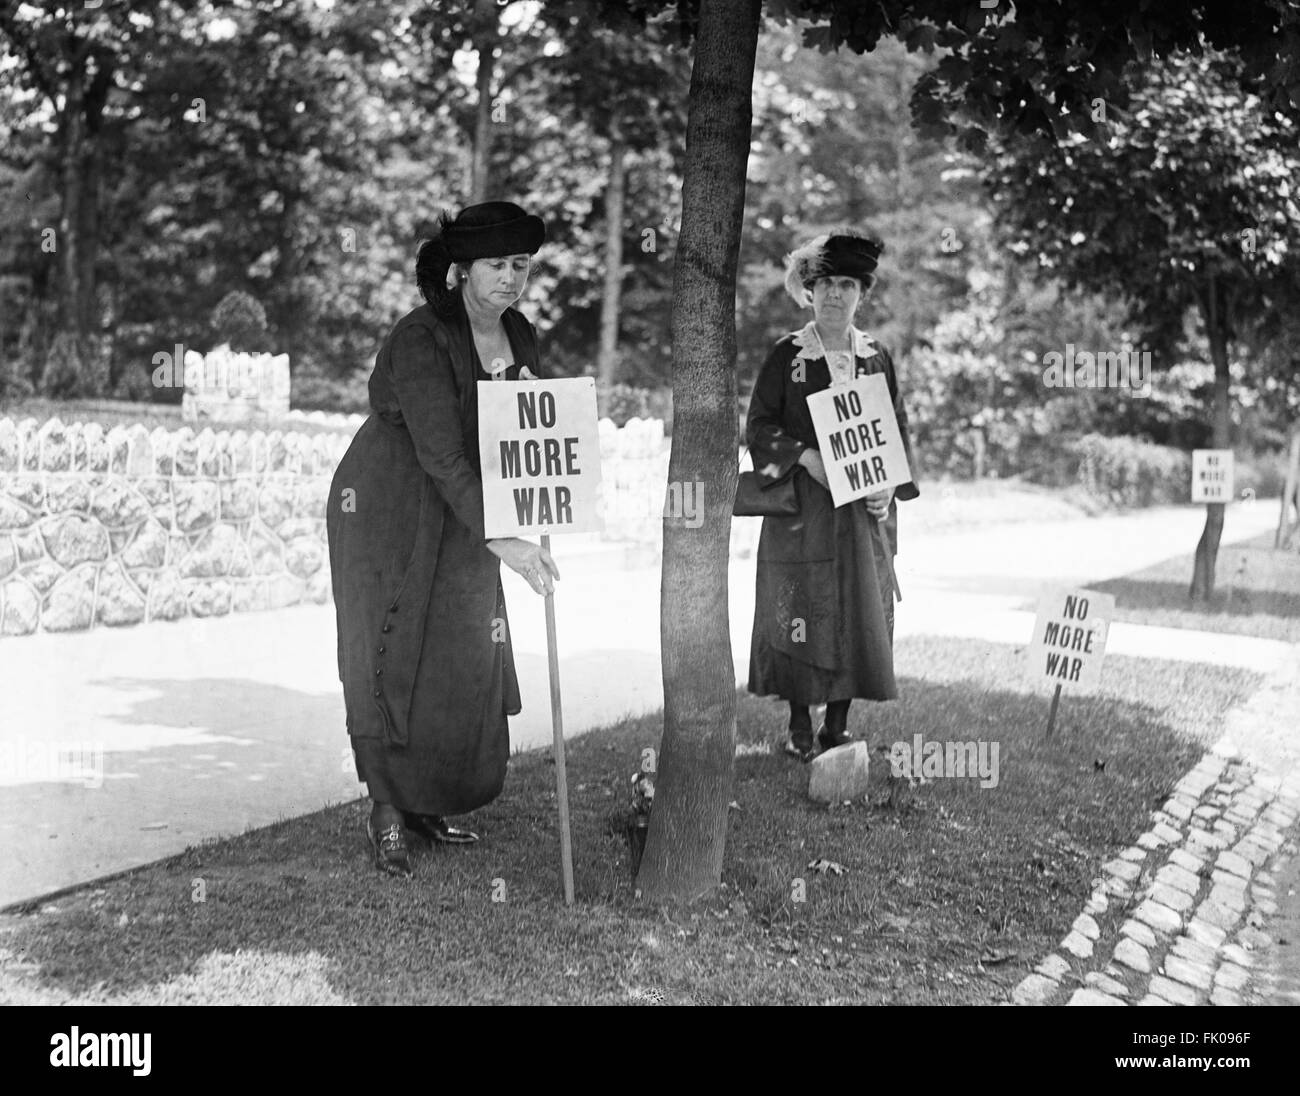 Los huelguistas en la carretera con carteles de "No Más Guerra", Estados Unidos, 1922 Foto de stock